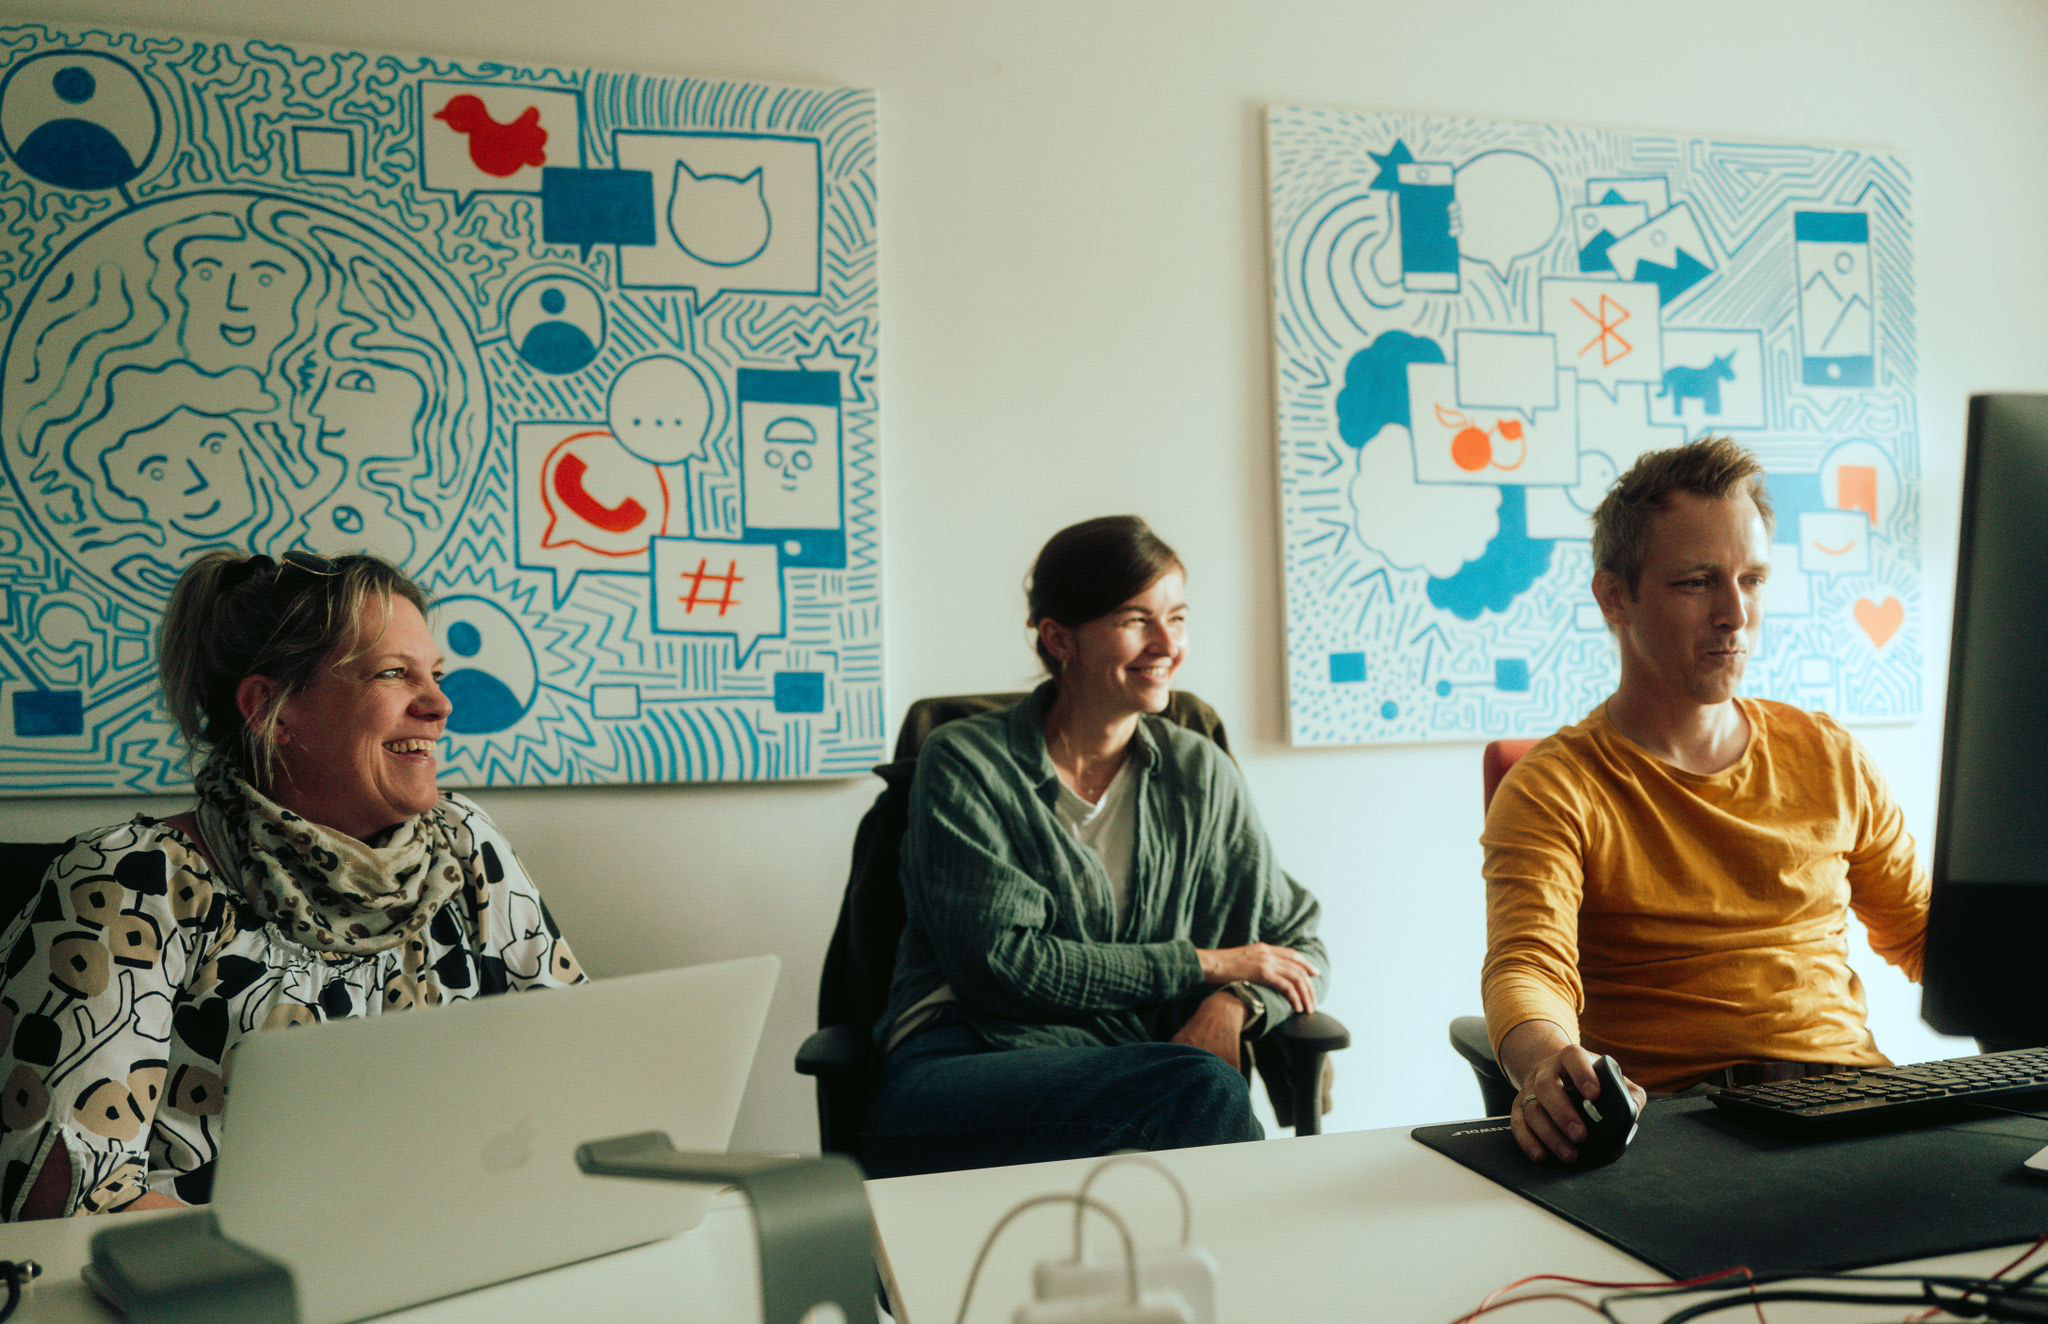 Drei Personen sitzen in einem Büro vor Computern und lächeln. Im Hintergrund hängen zwei farbenfrohe, grafische Kunstwerke an der Wand.